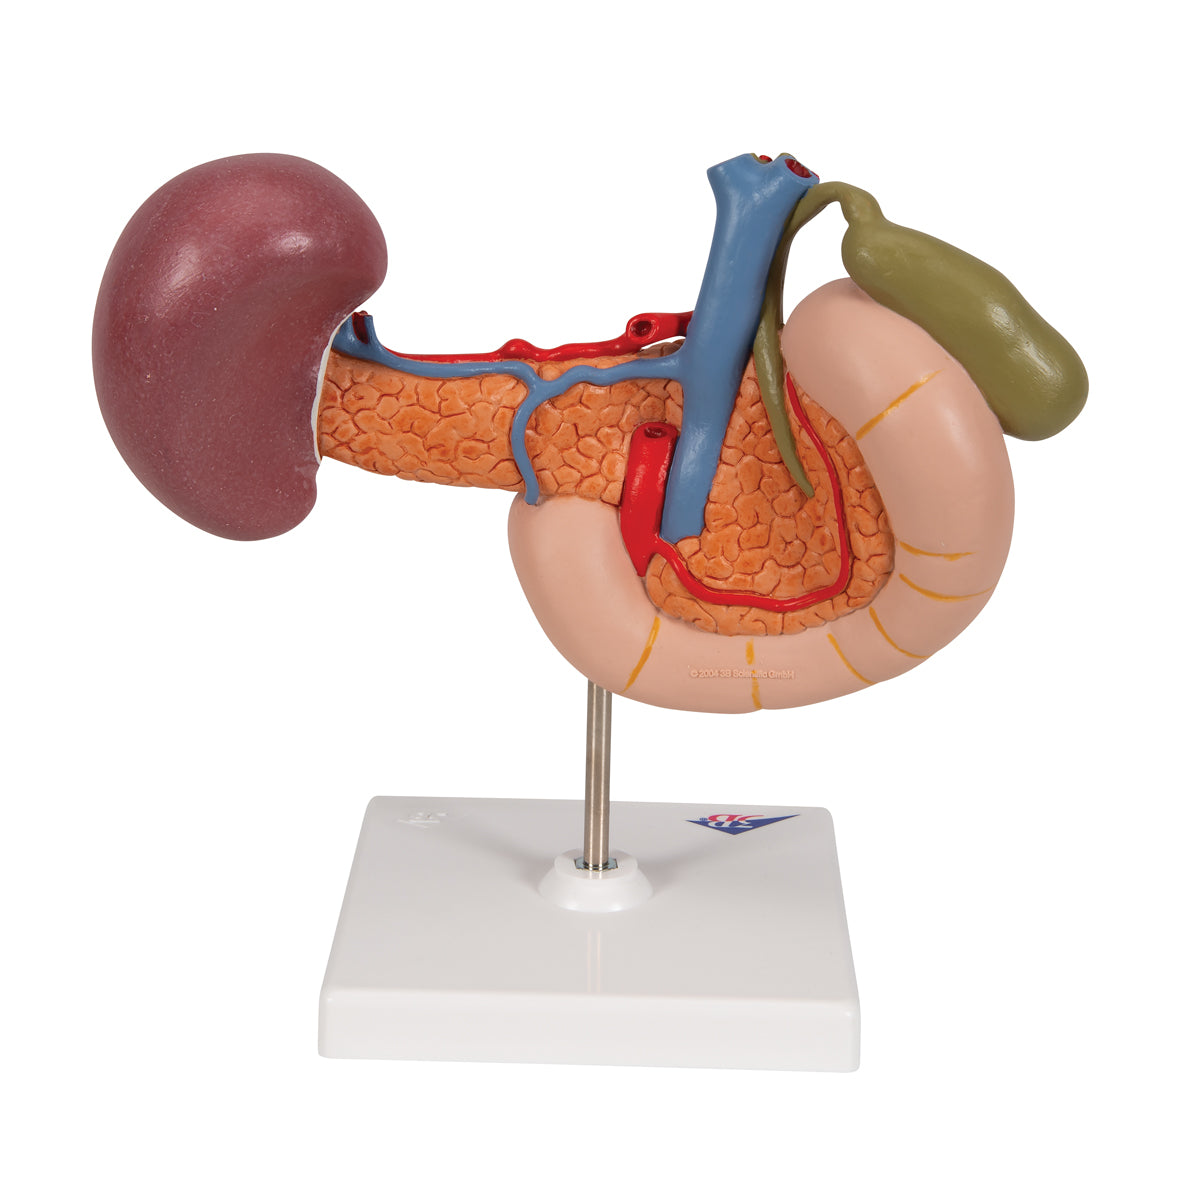 Modell av tolvfingertarmen och förhållandet mellan bukspottkörteln och andra organ